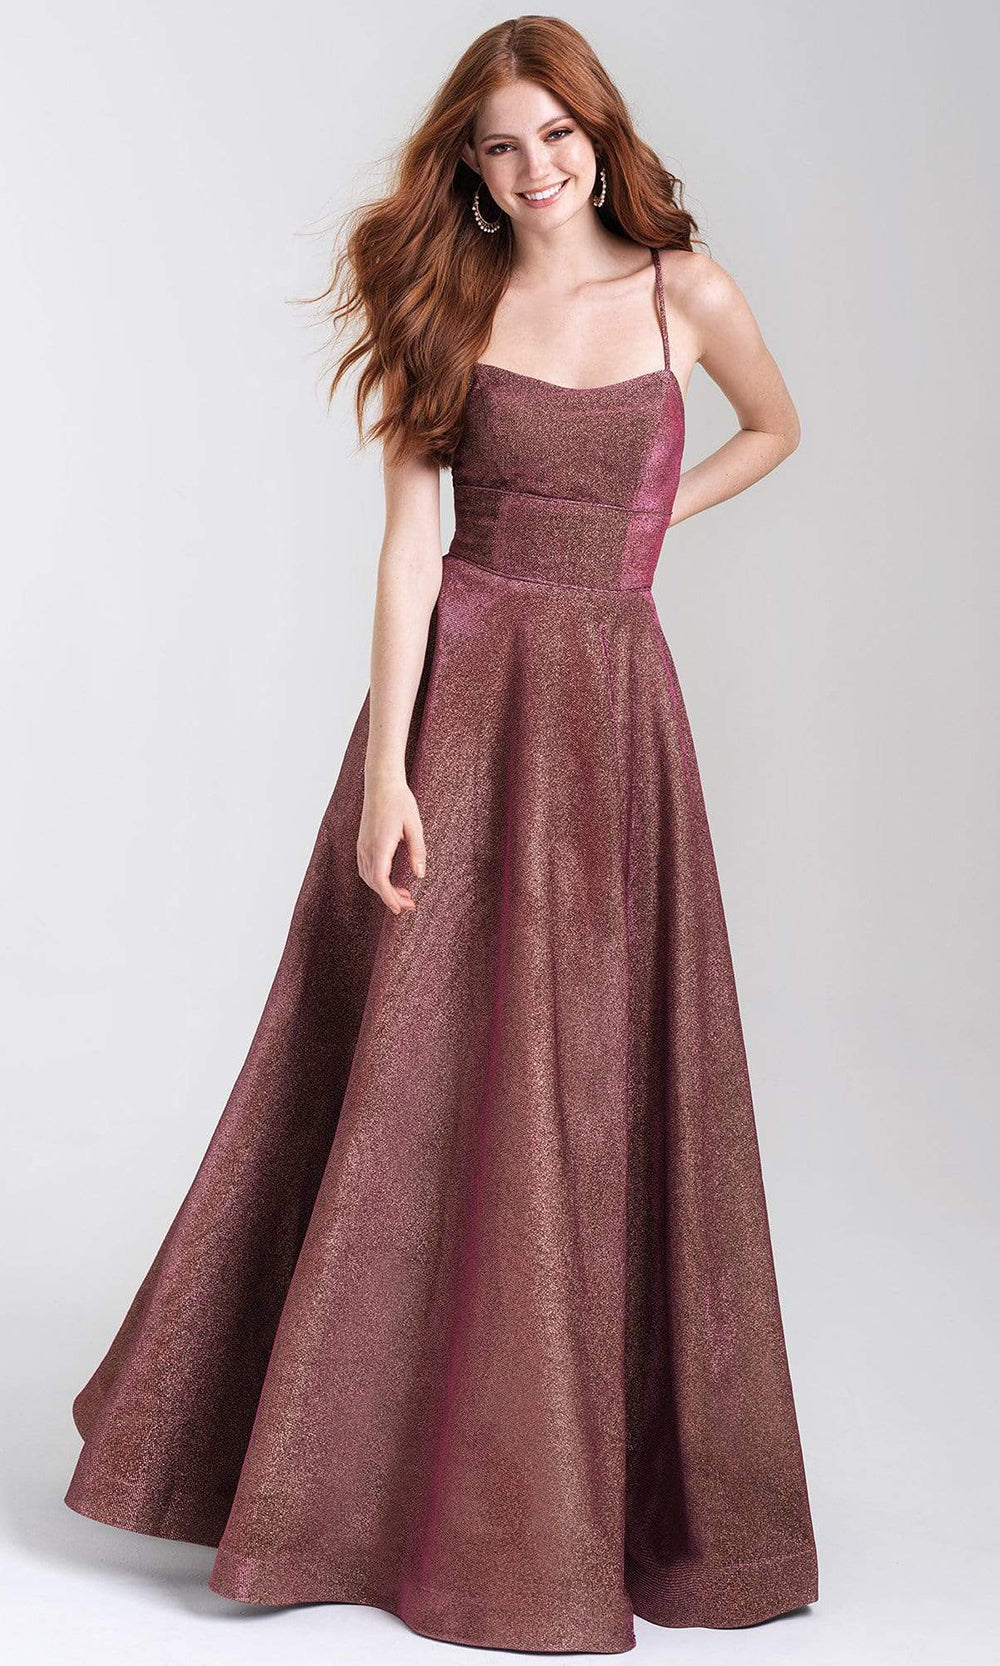 Madison James - 20-381 Shimmer Knit Scoop A-line Dress Prom Dresses 2 / Copper Rose